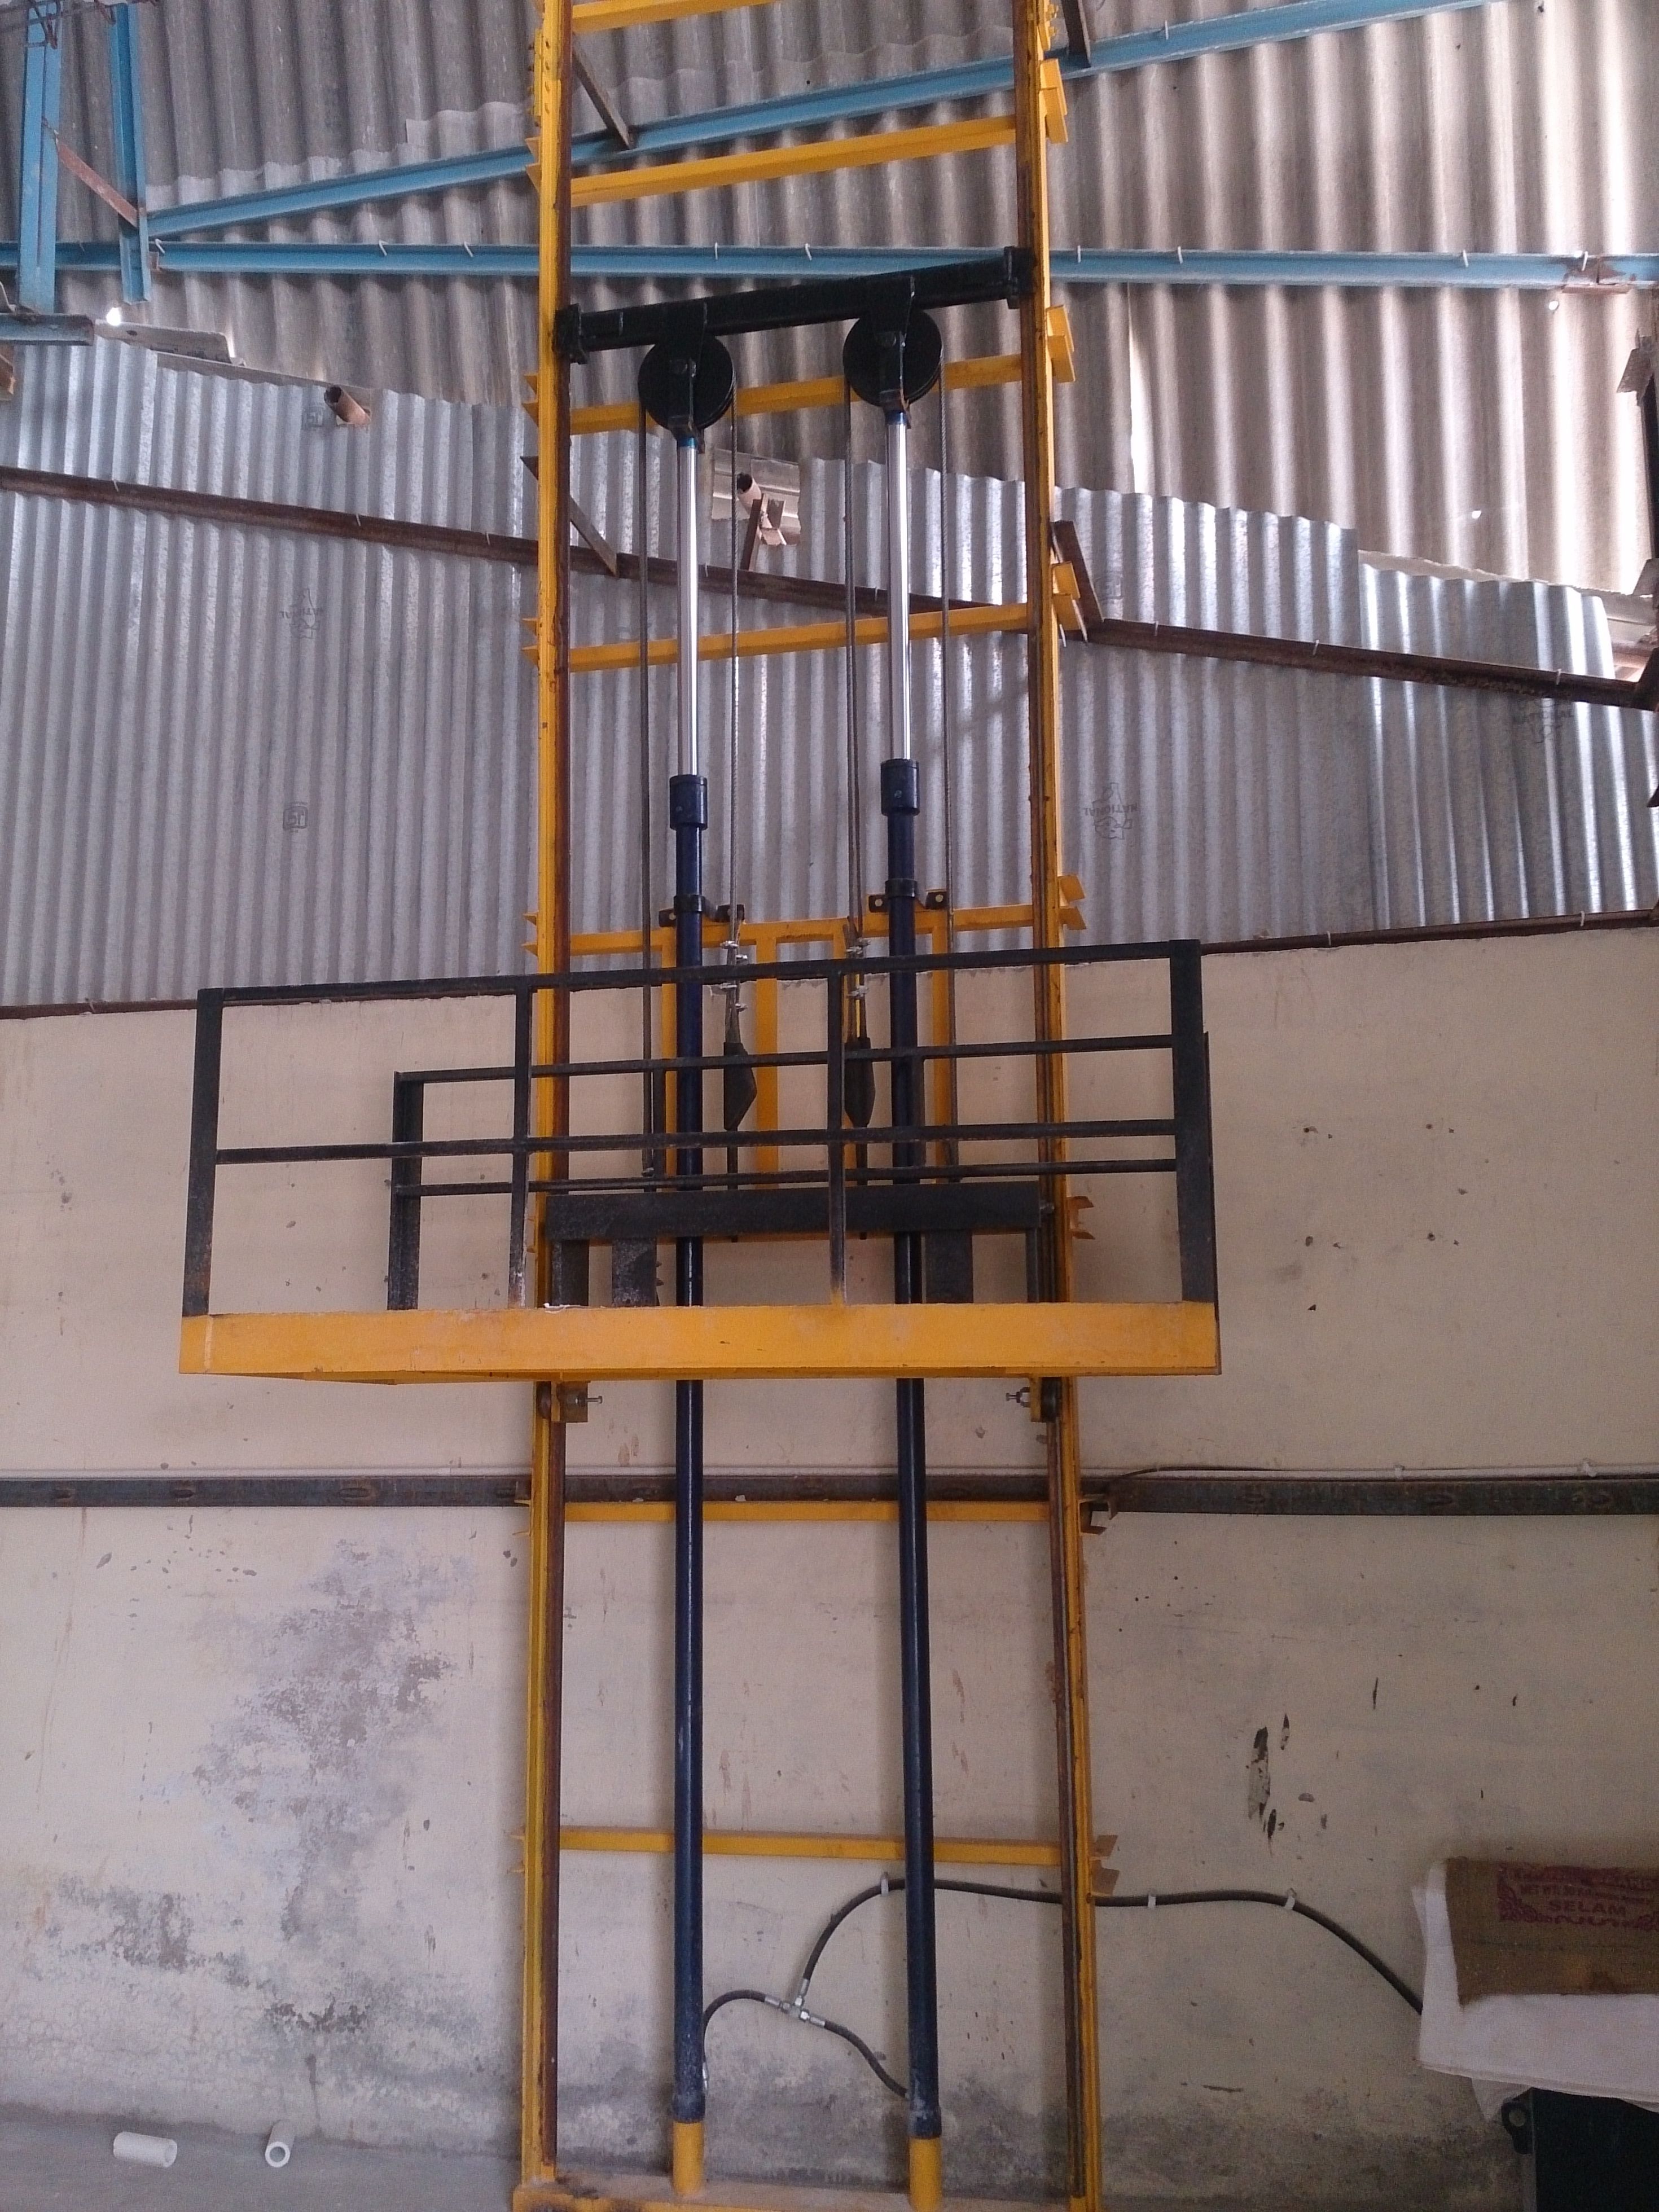 Single mast hydraulics Stacker Lift